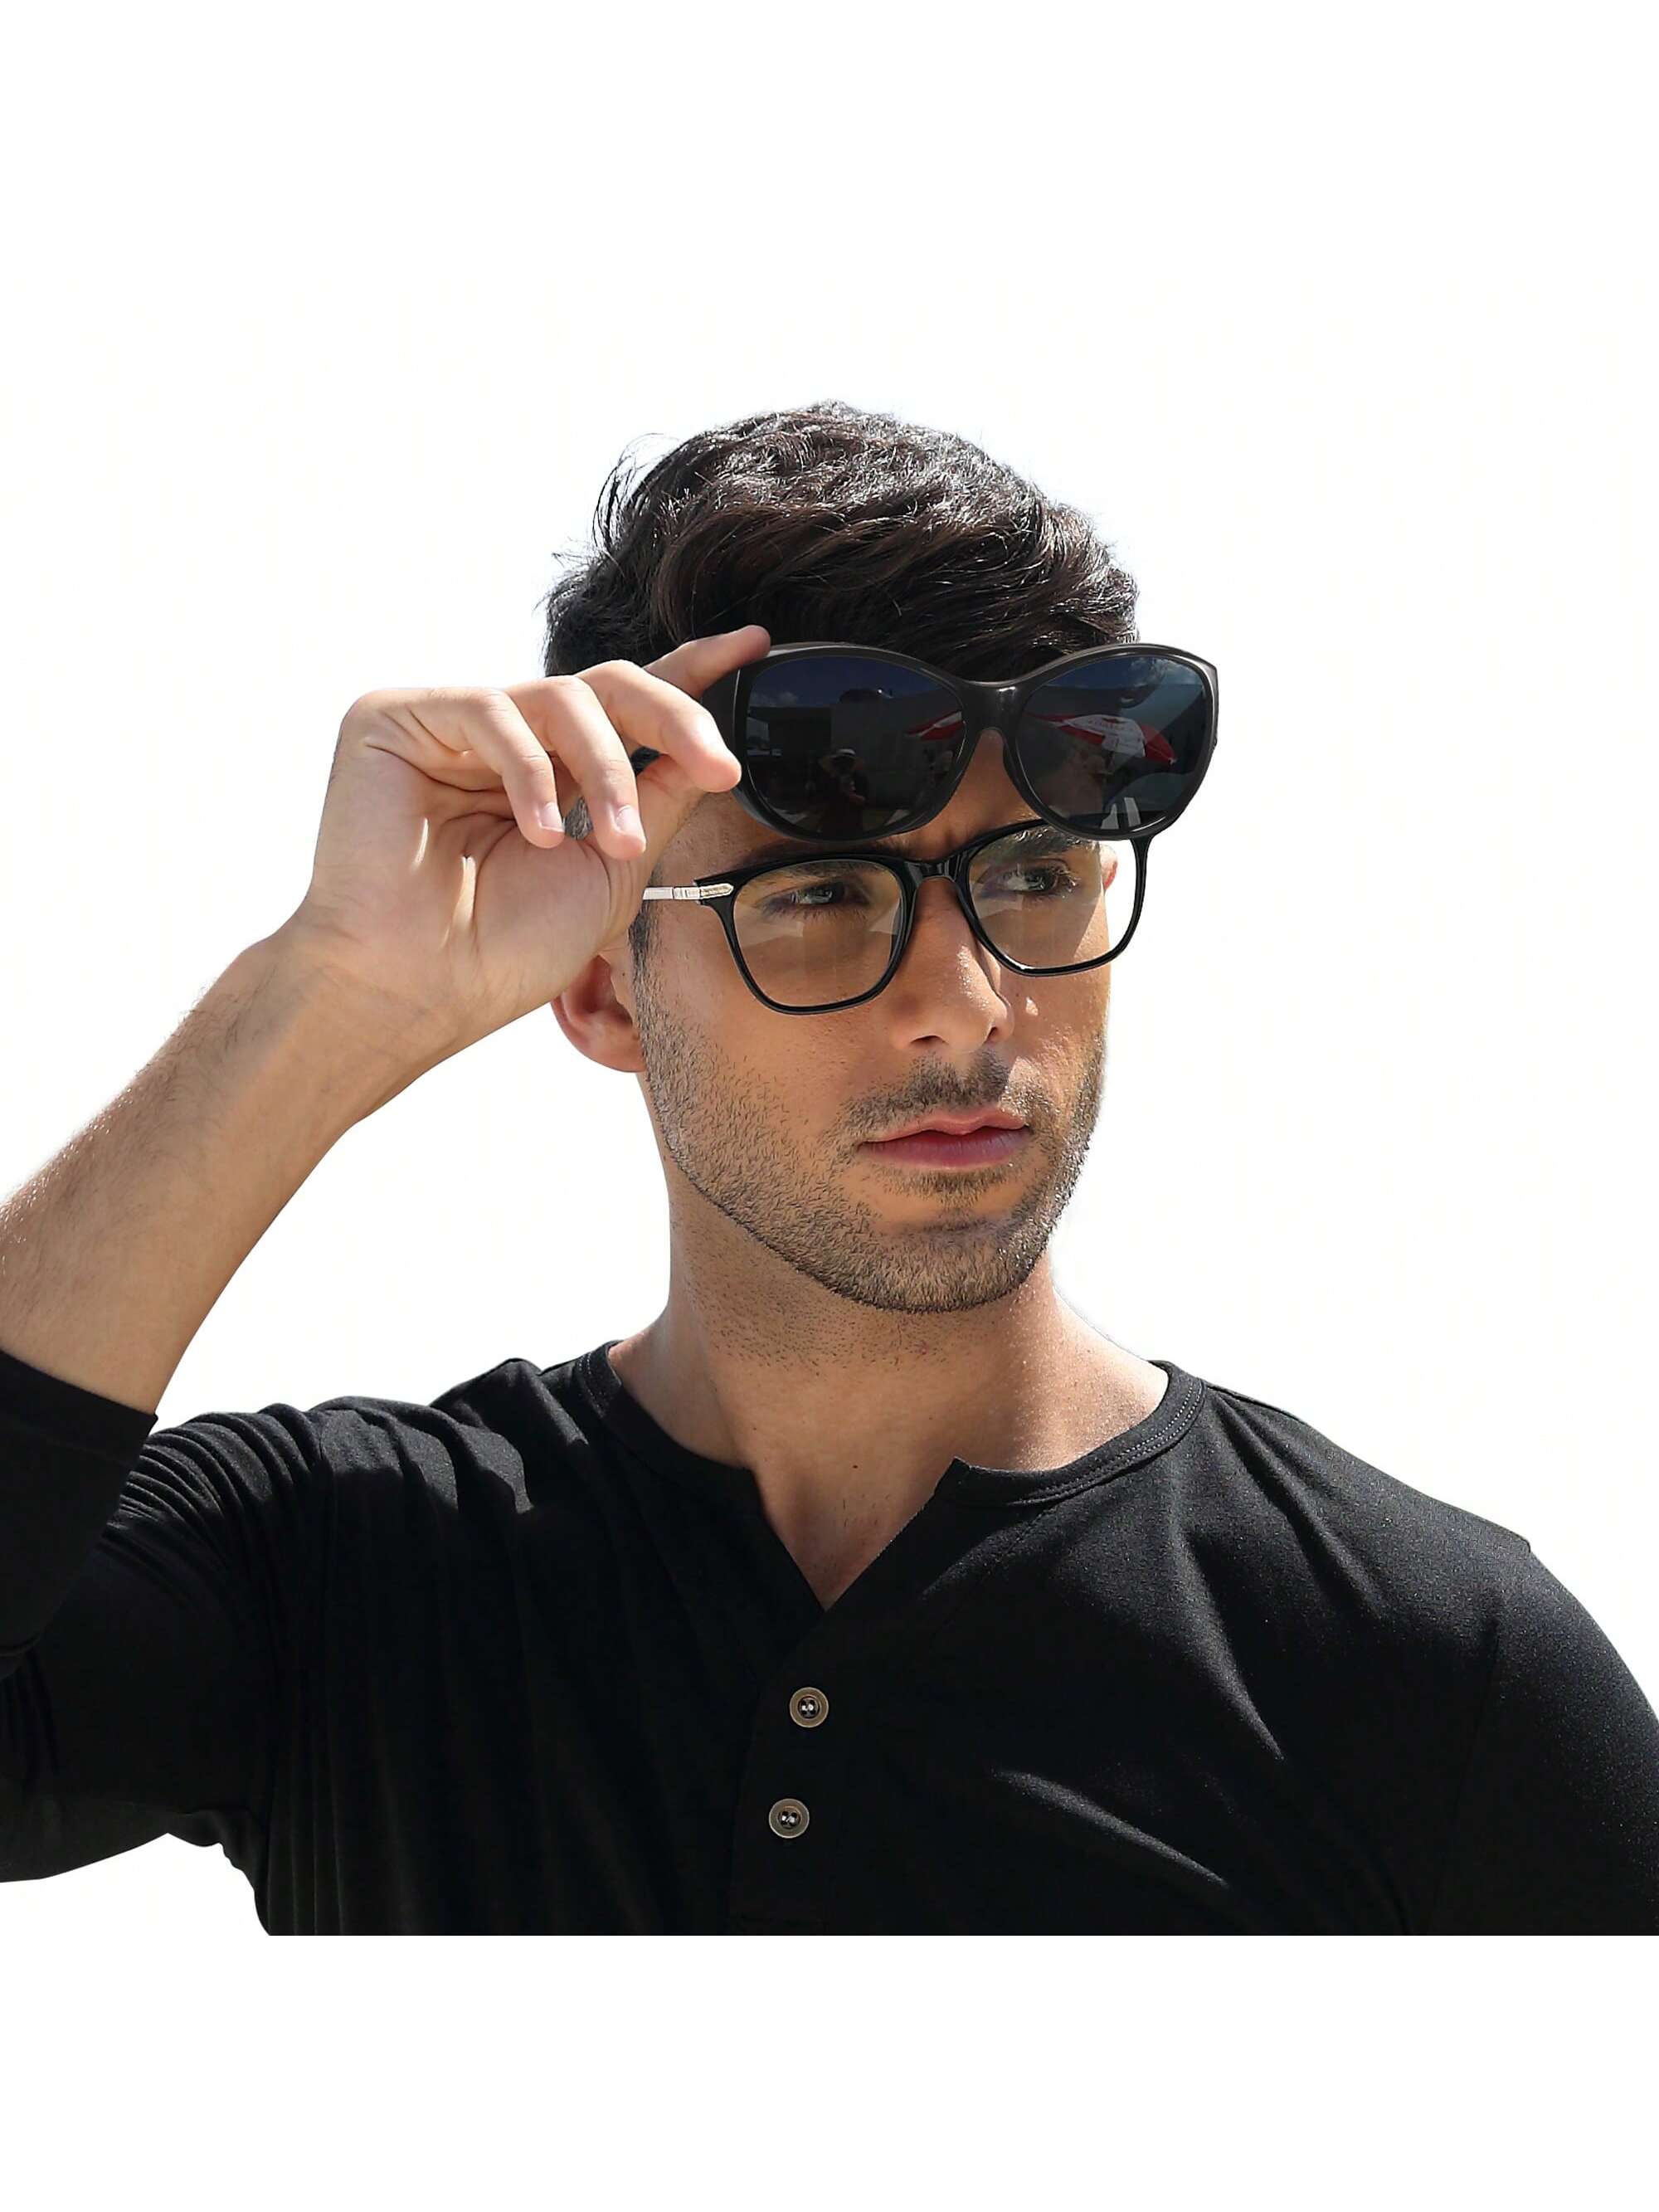 LVIOE 1 пара поляризованных солнцезащитных очков для женщин и мужчин поляризованные солнцезащитные очки lvioe для мужчин